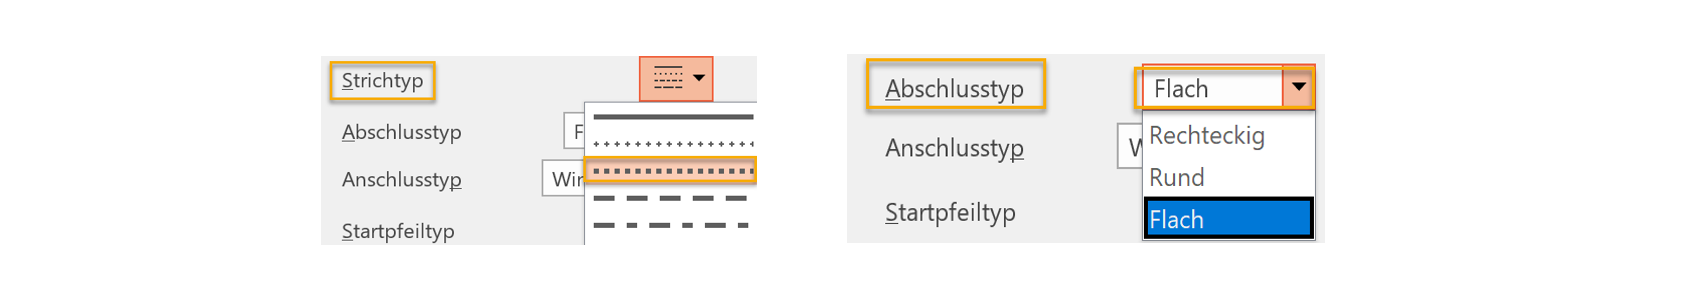 Zwei PowerPoint-Screenshots nebeneinander: Beim ersten ist der Strichtyp viereckiger Punkt markiert, beim zweiten der Abschlusstyp Flach